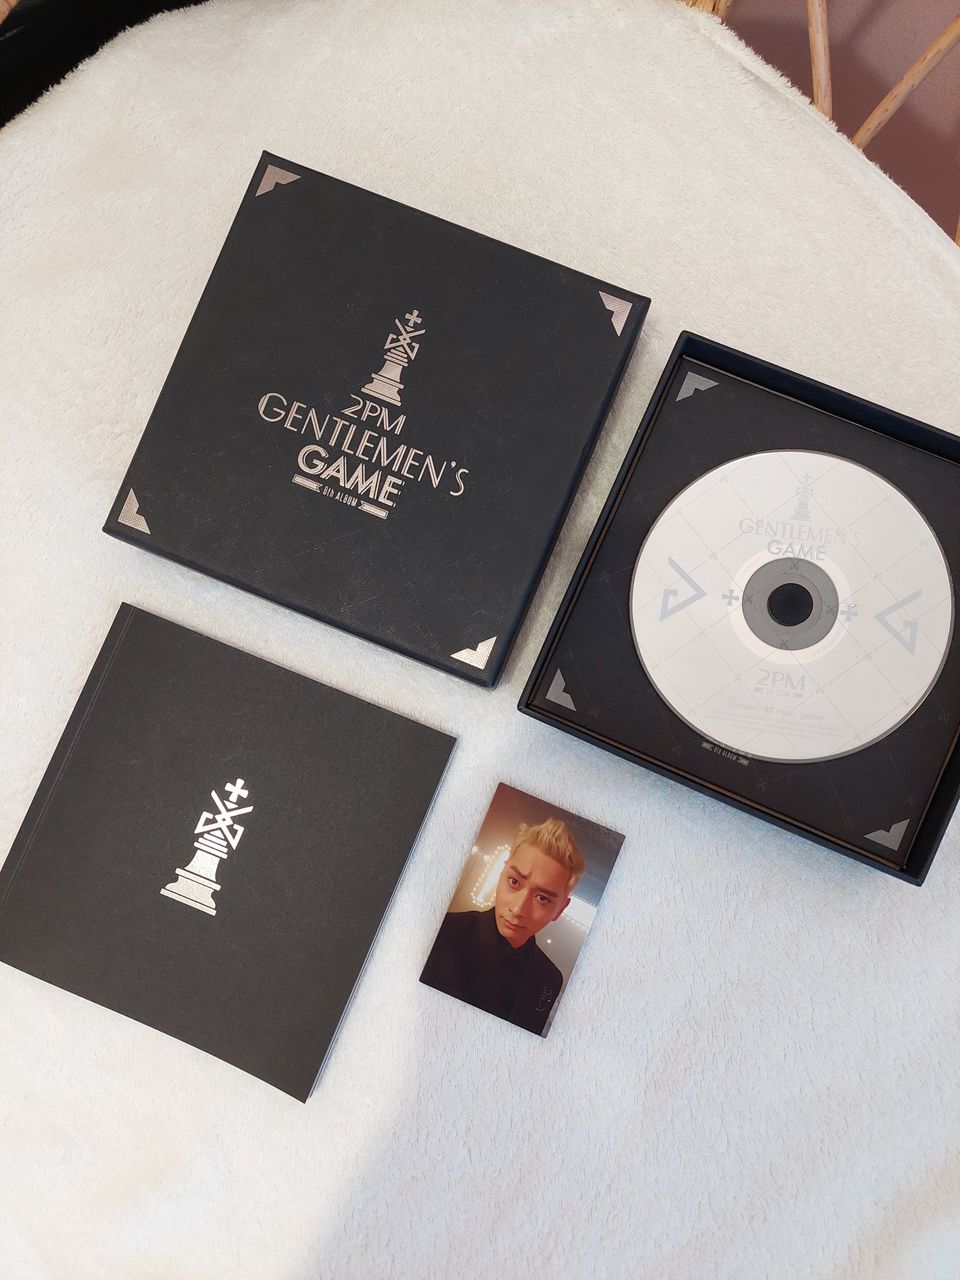 KPOP 2PM Gentlemen's Game albumi